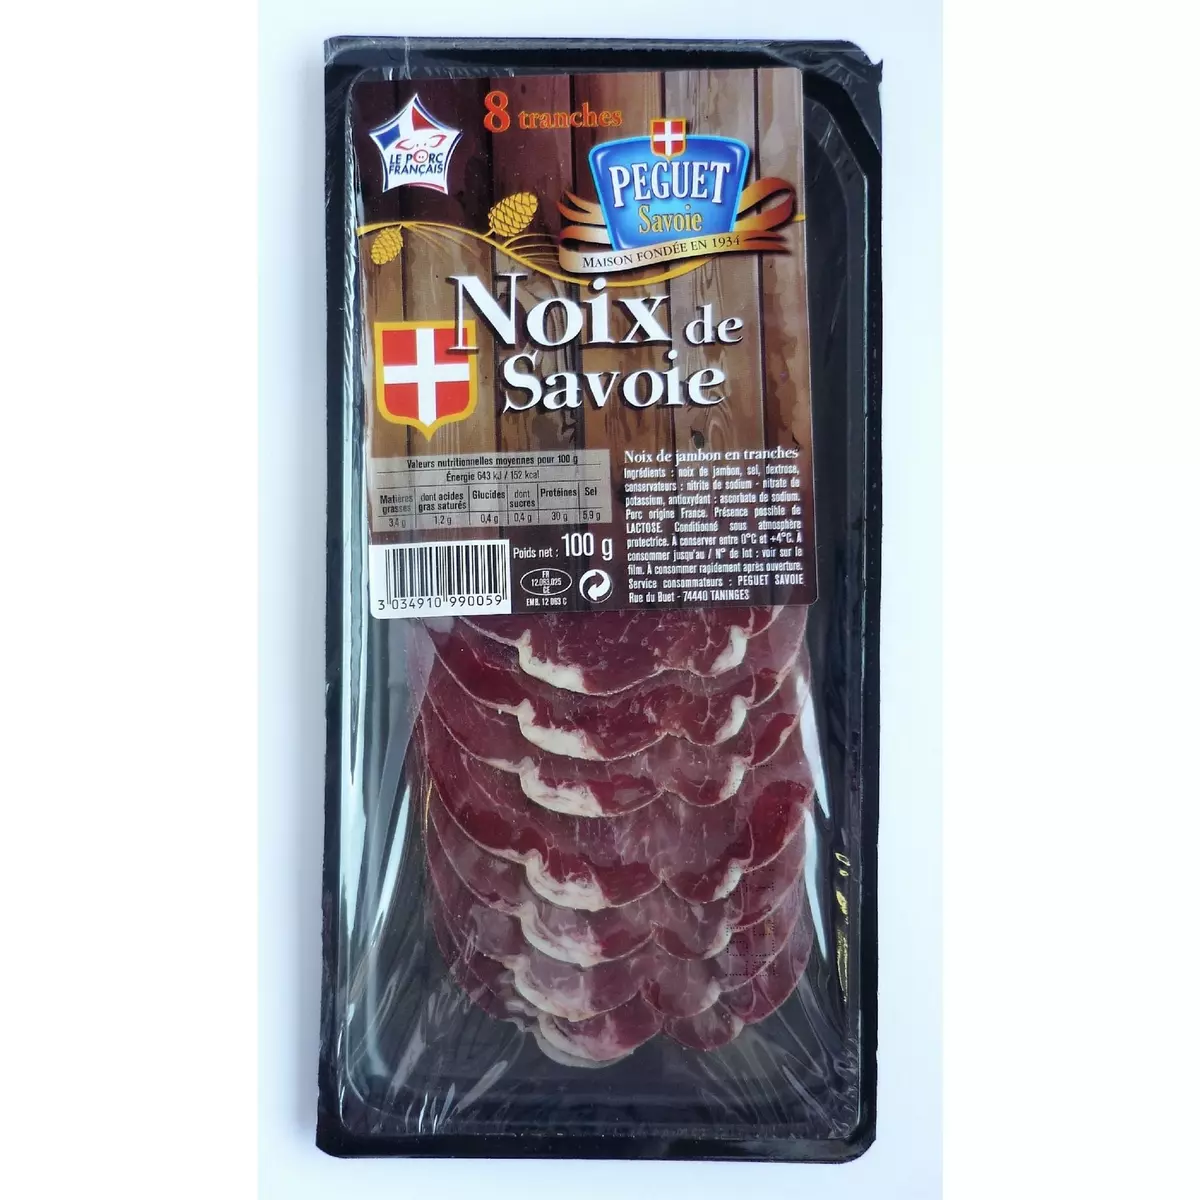 PEGUET Noix de jambon de Savoie 8 tranches 100g